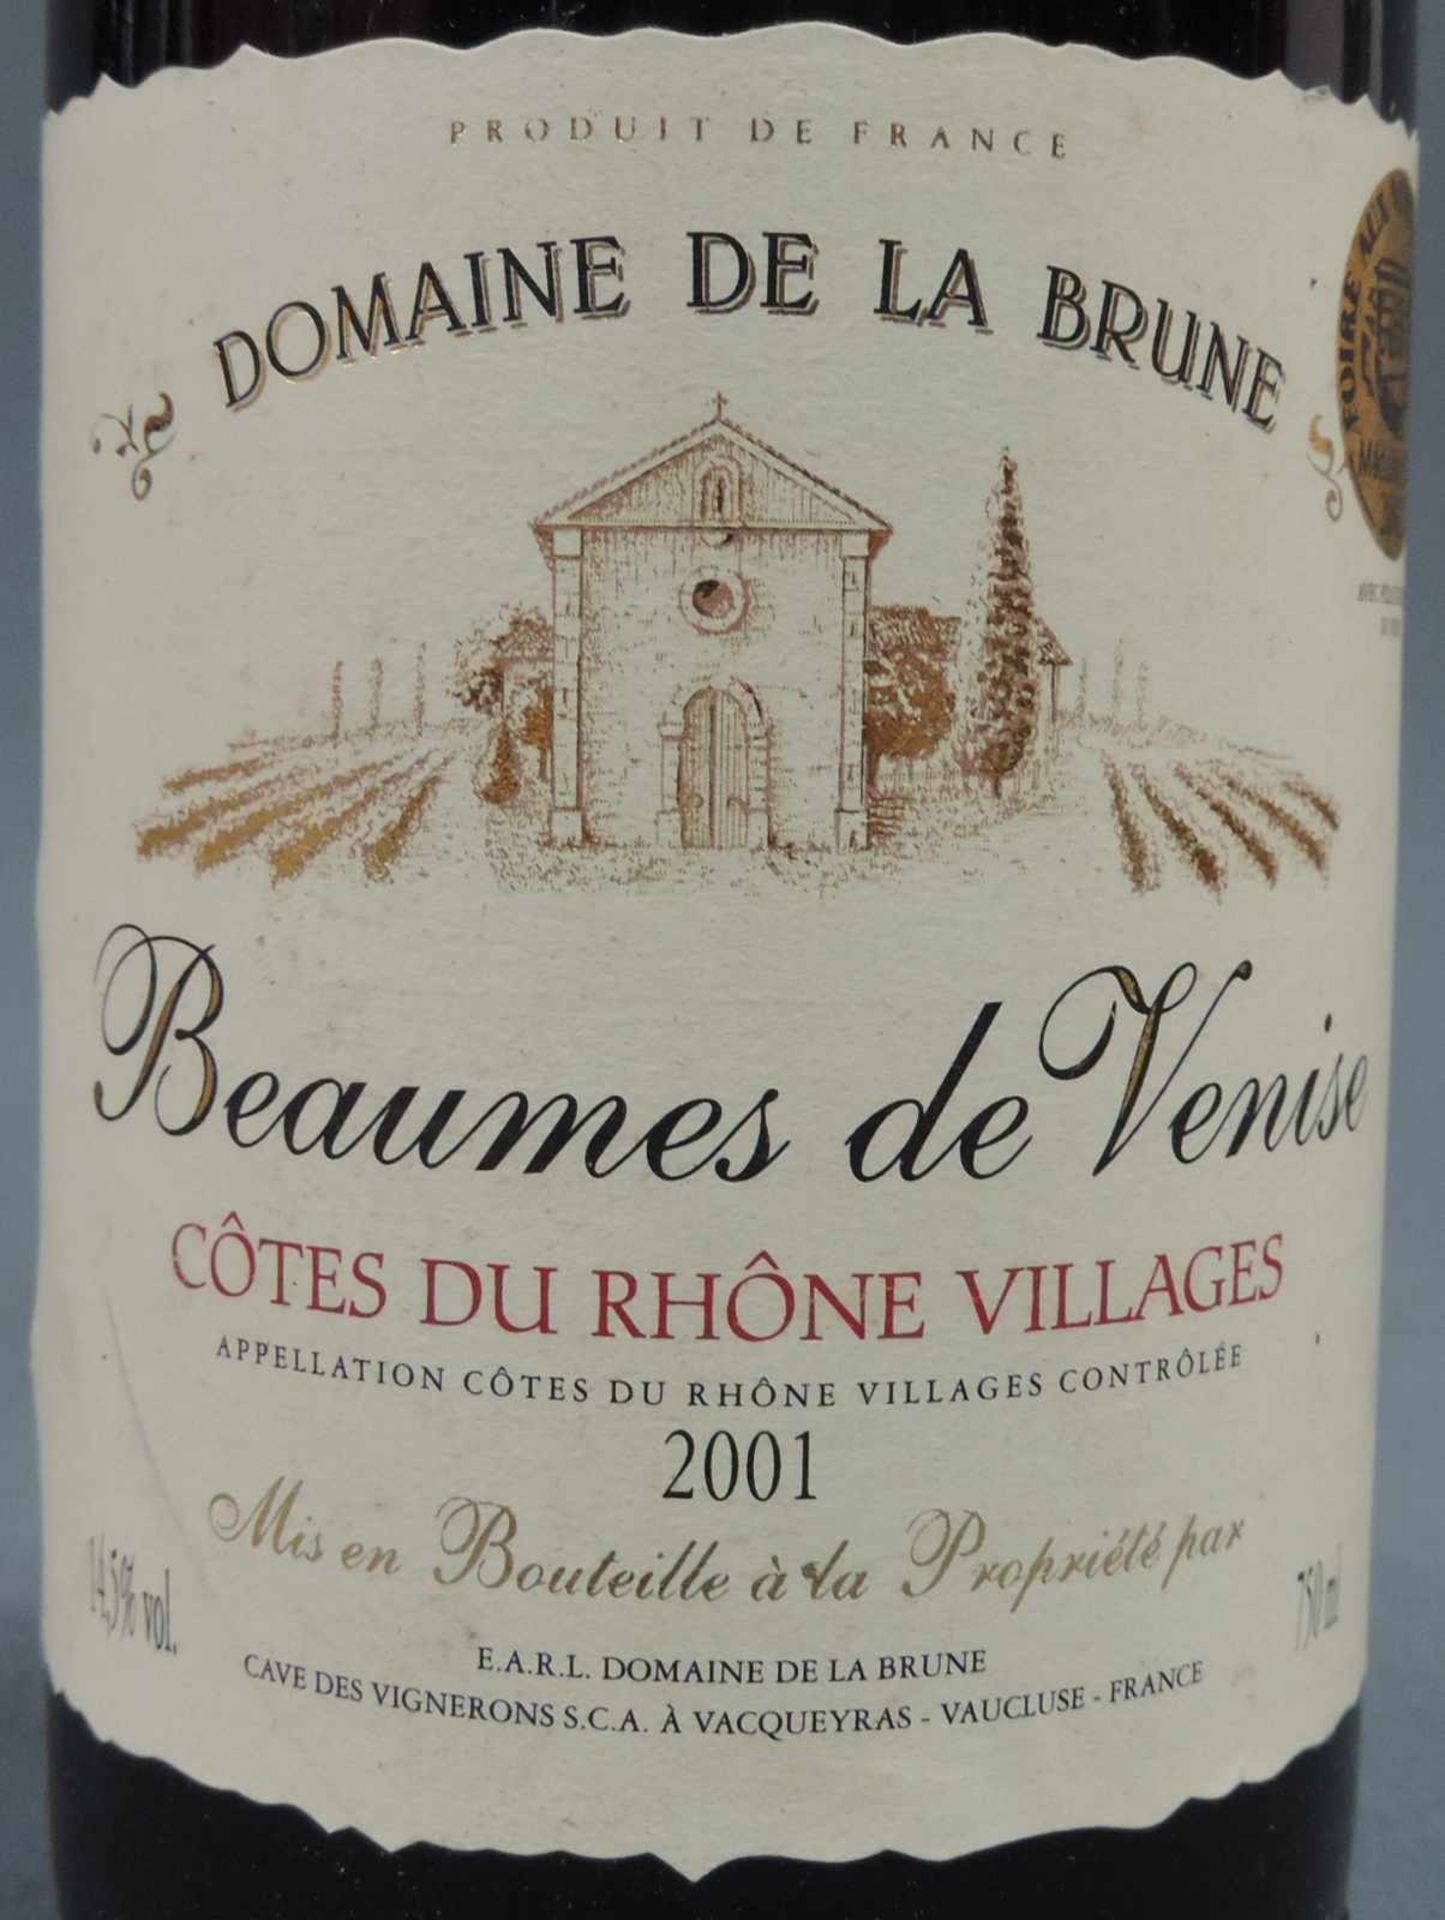 2001 und 2002 (5x) Domaine de la Brune, Beaumes de Venise. Insgesamt 6 ganze Flaschen 750 ml. - Bild 6 aus 10